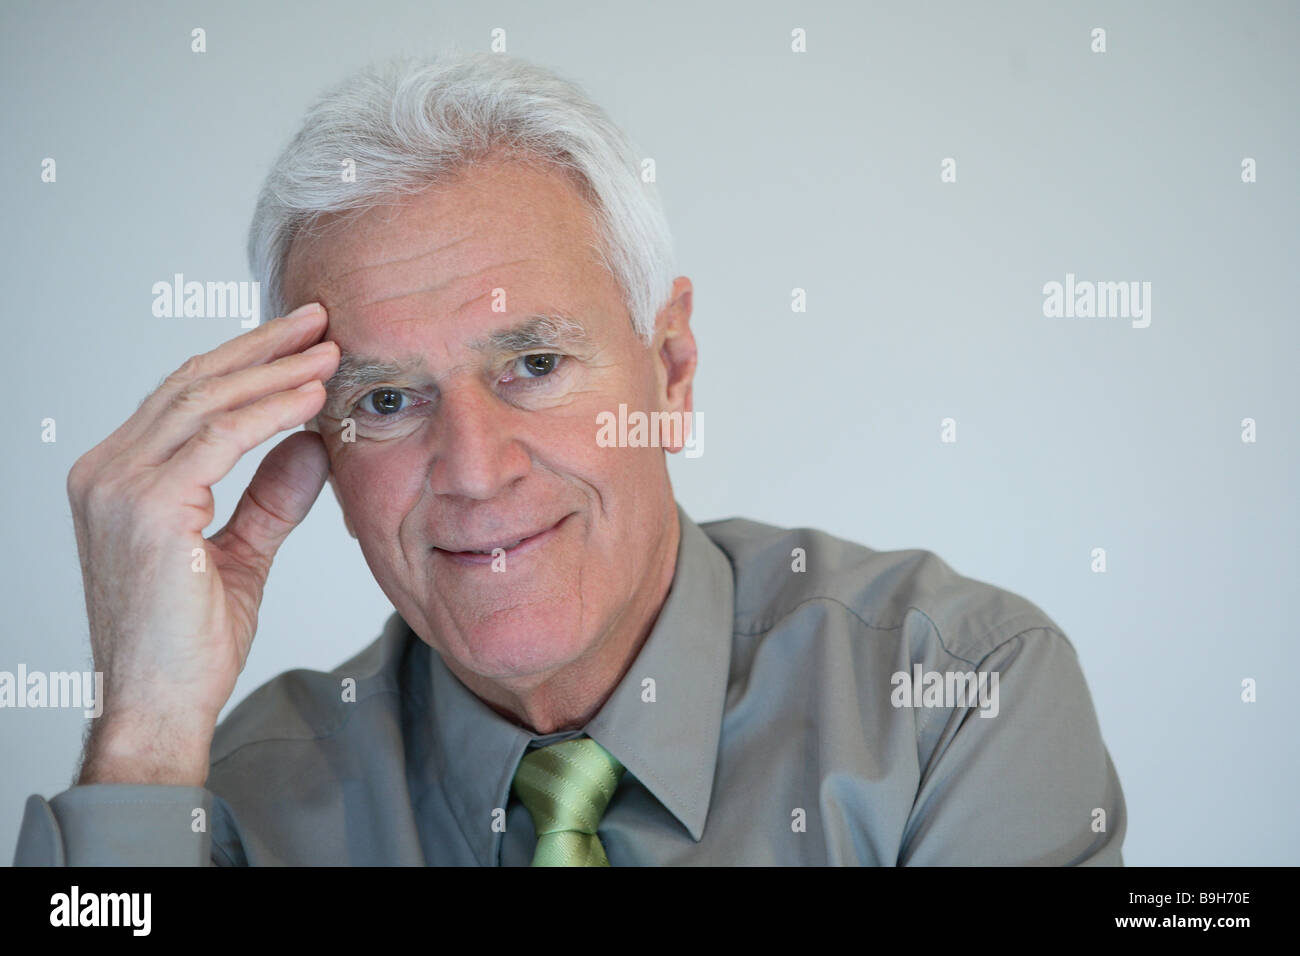 Série haute smiling portrait des aînés retraités personnes l'homme aux cheveux blancs de bien vouloir sérieusement shirt rapiécé pensée pensée Banque D'Images